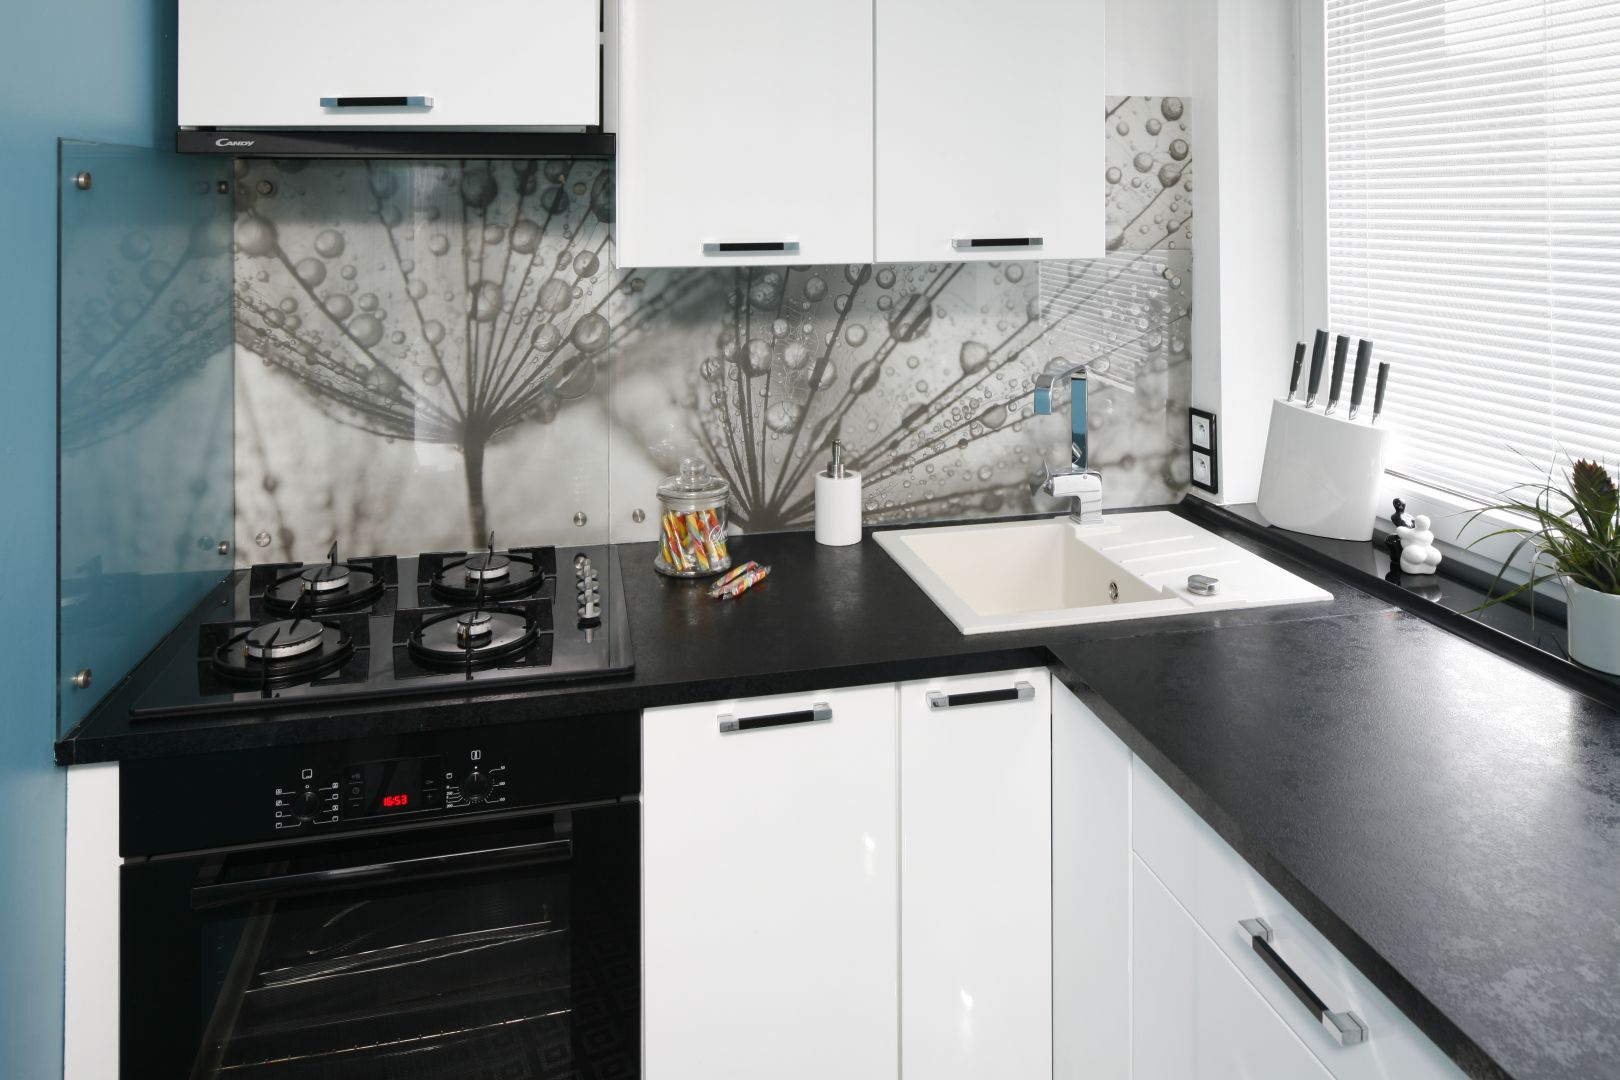 Mała kuchnia urządzona w bieli i czerni. Dużo ładnych zdjęć. Projekt Marta Kilan